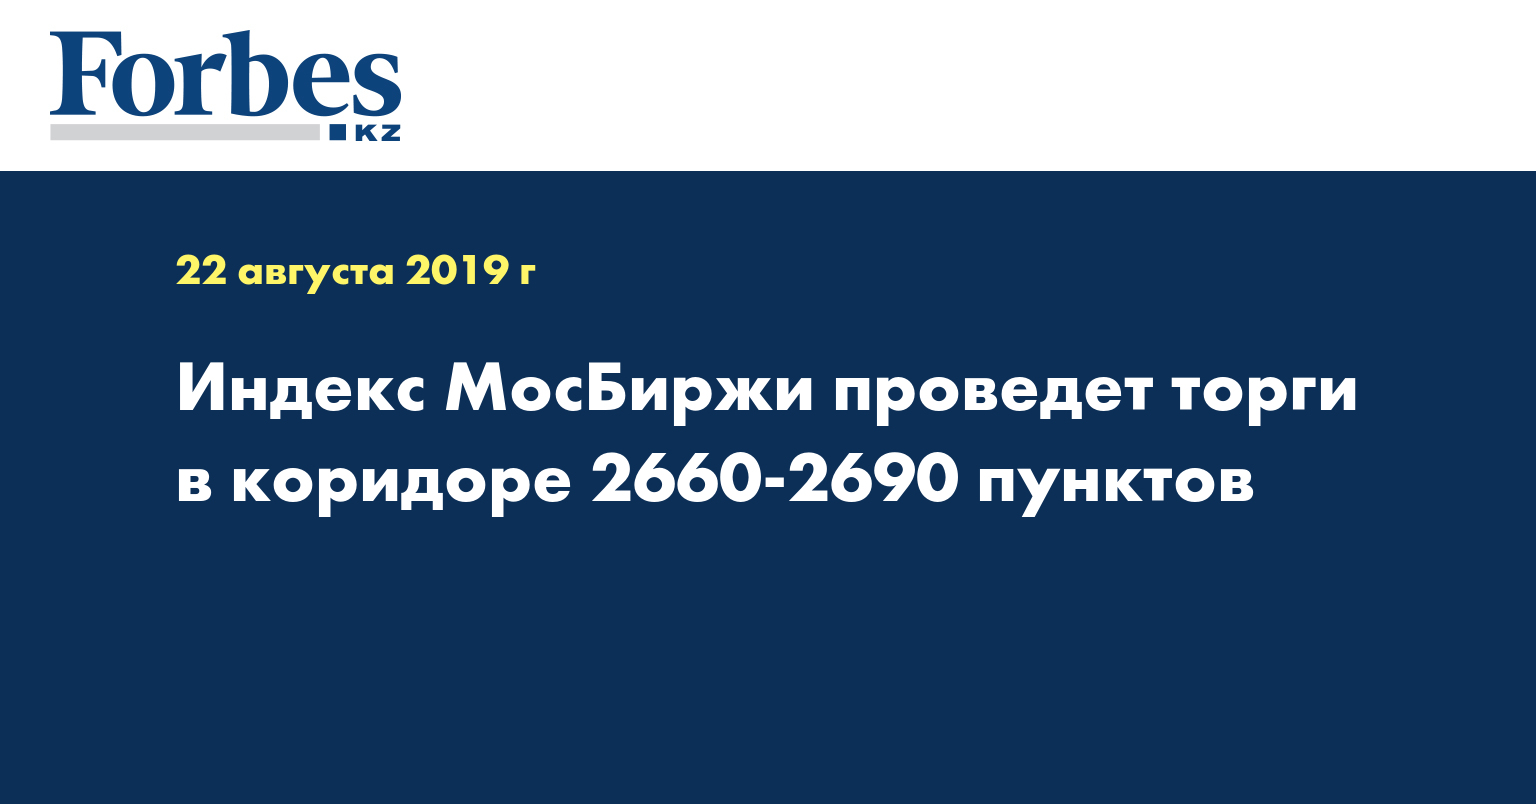 Индекс МосБиржи проведет торги в коридоре 2660-2690 пунктов